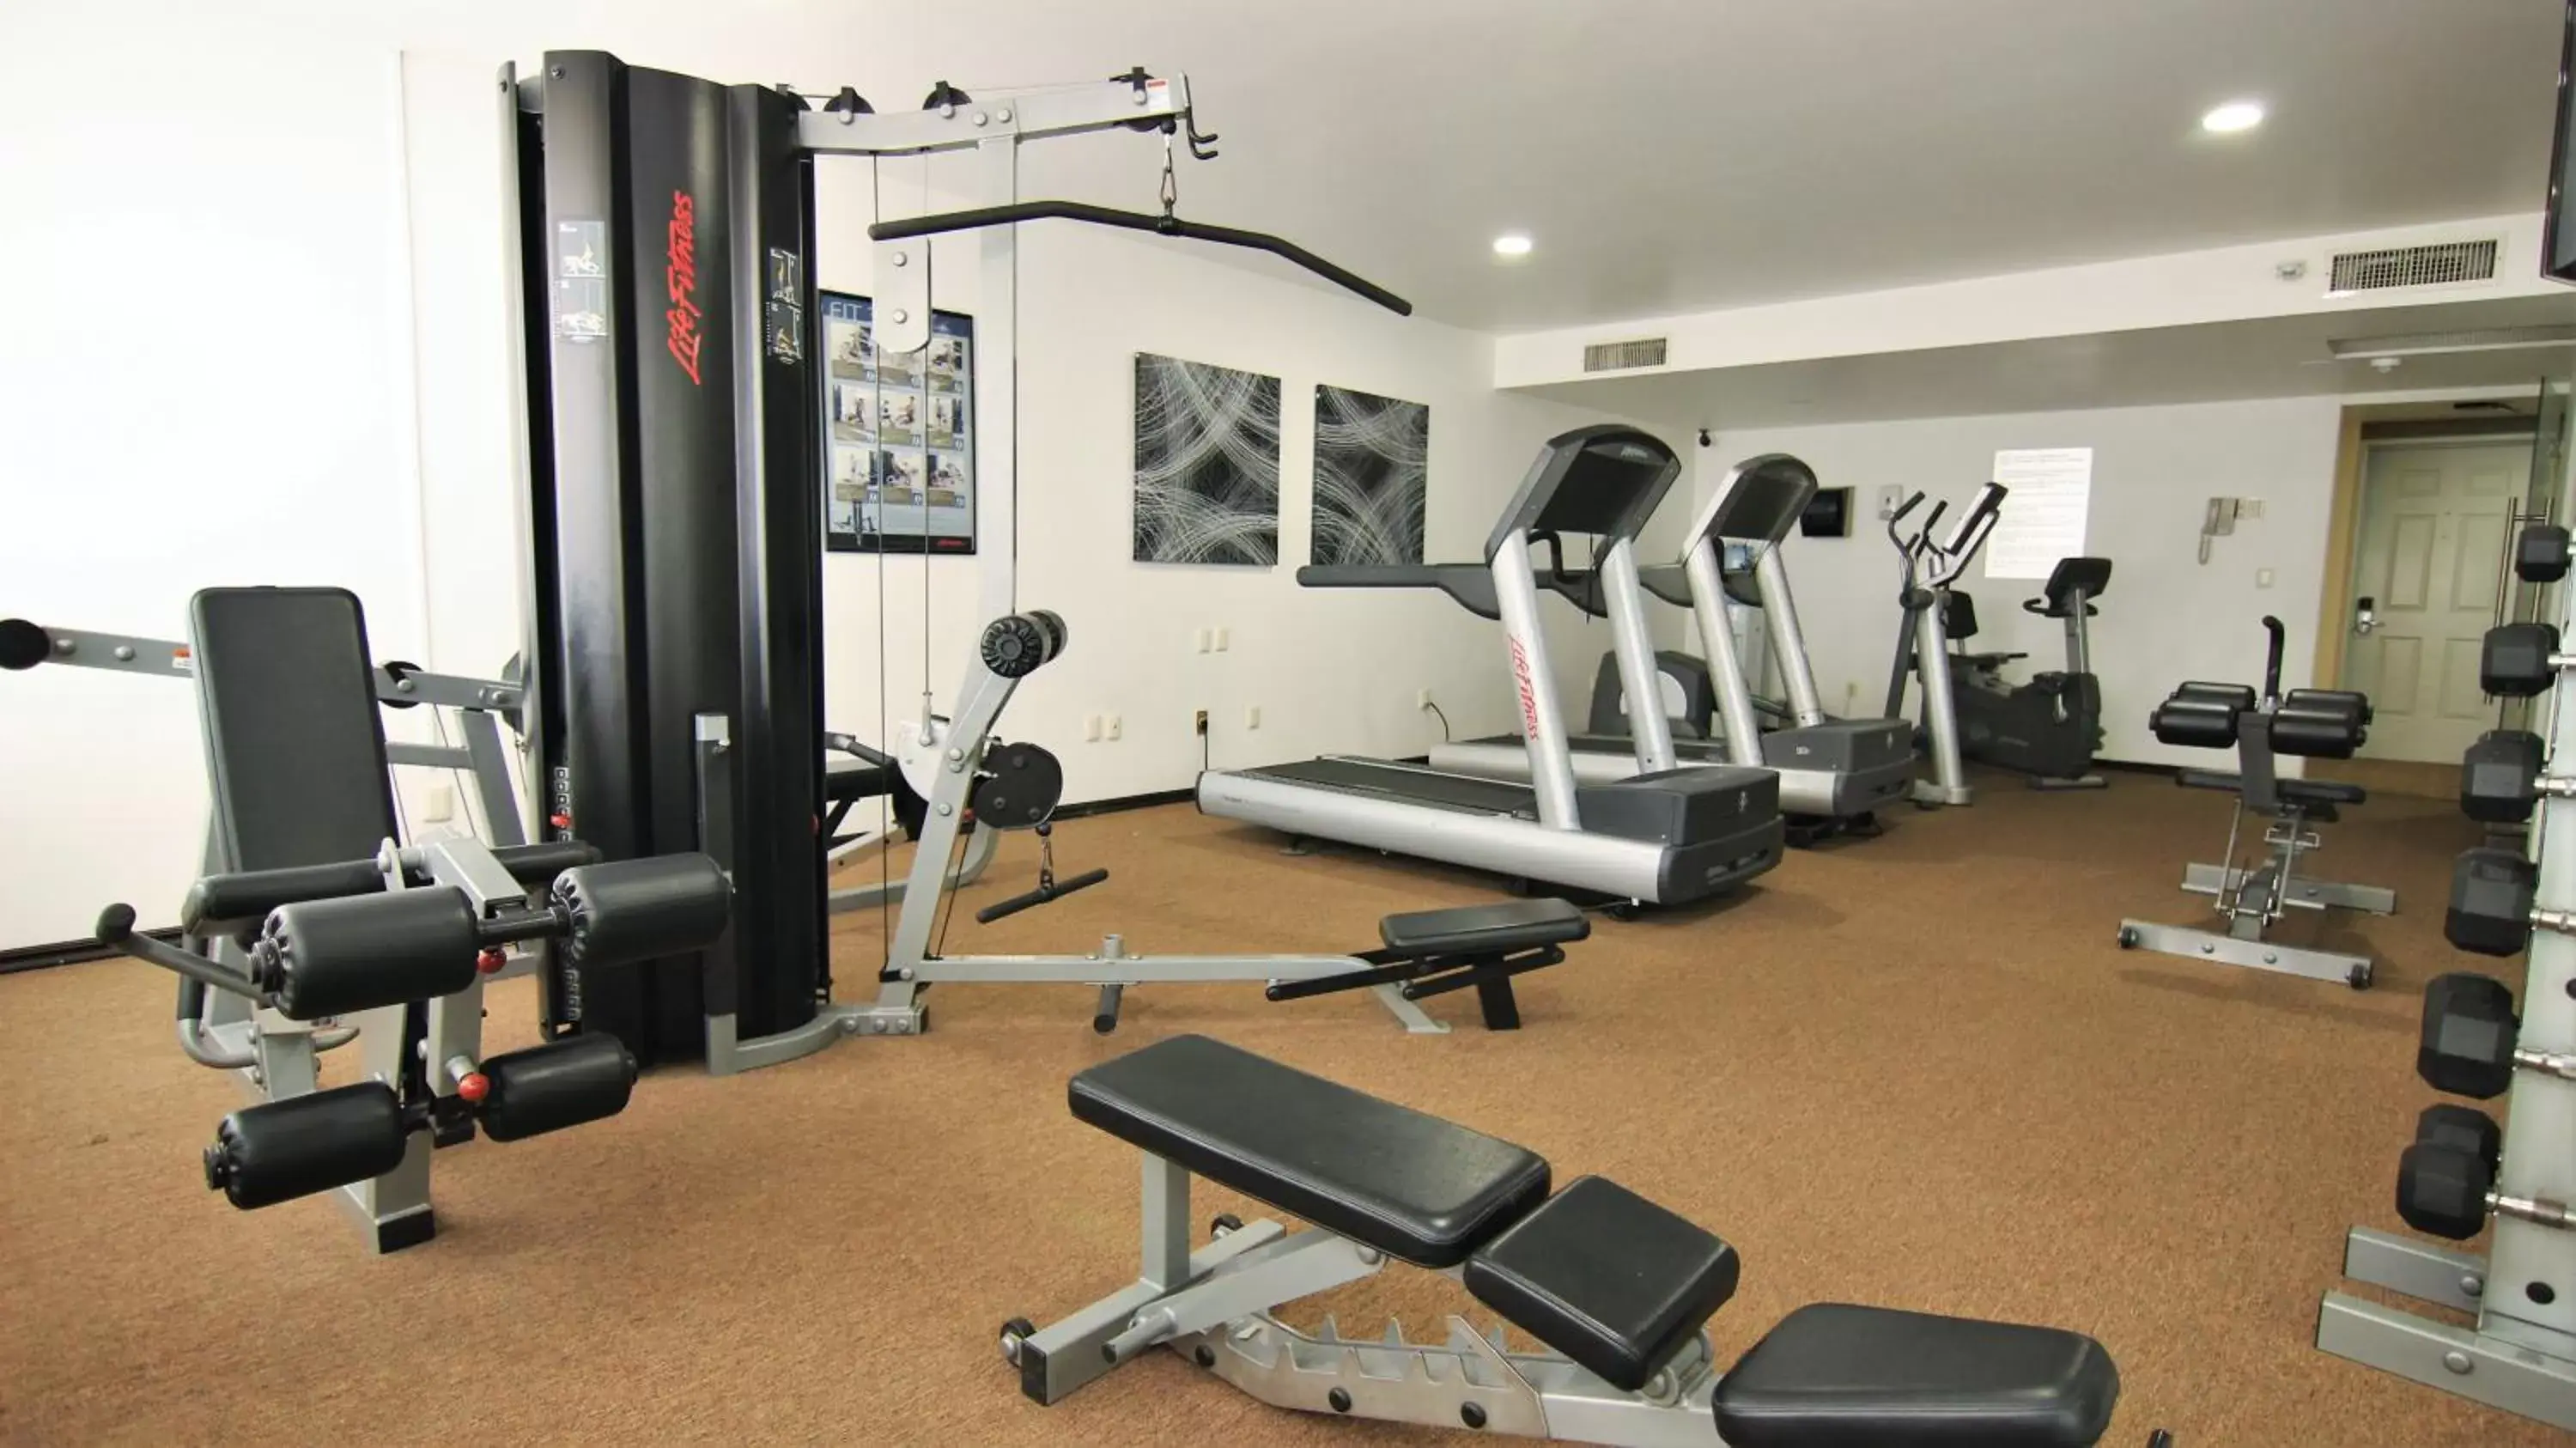 Fitness centre/facilities, Fitness Center/Facilities in Hotel Fray Junipero Serra